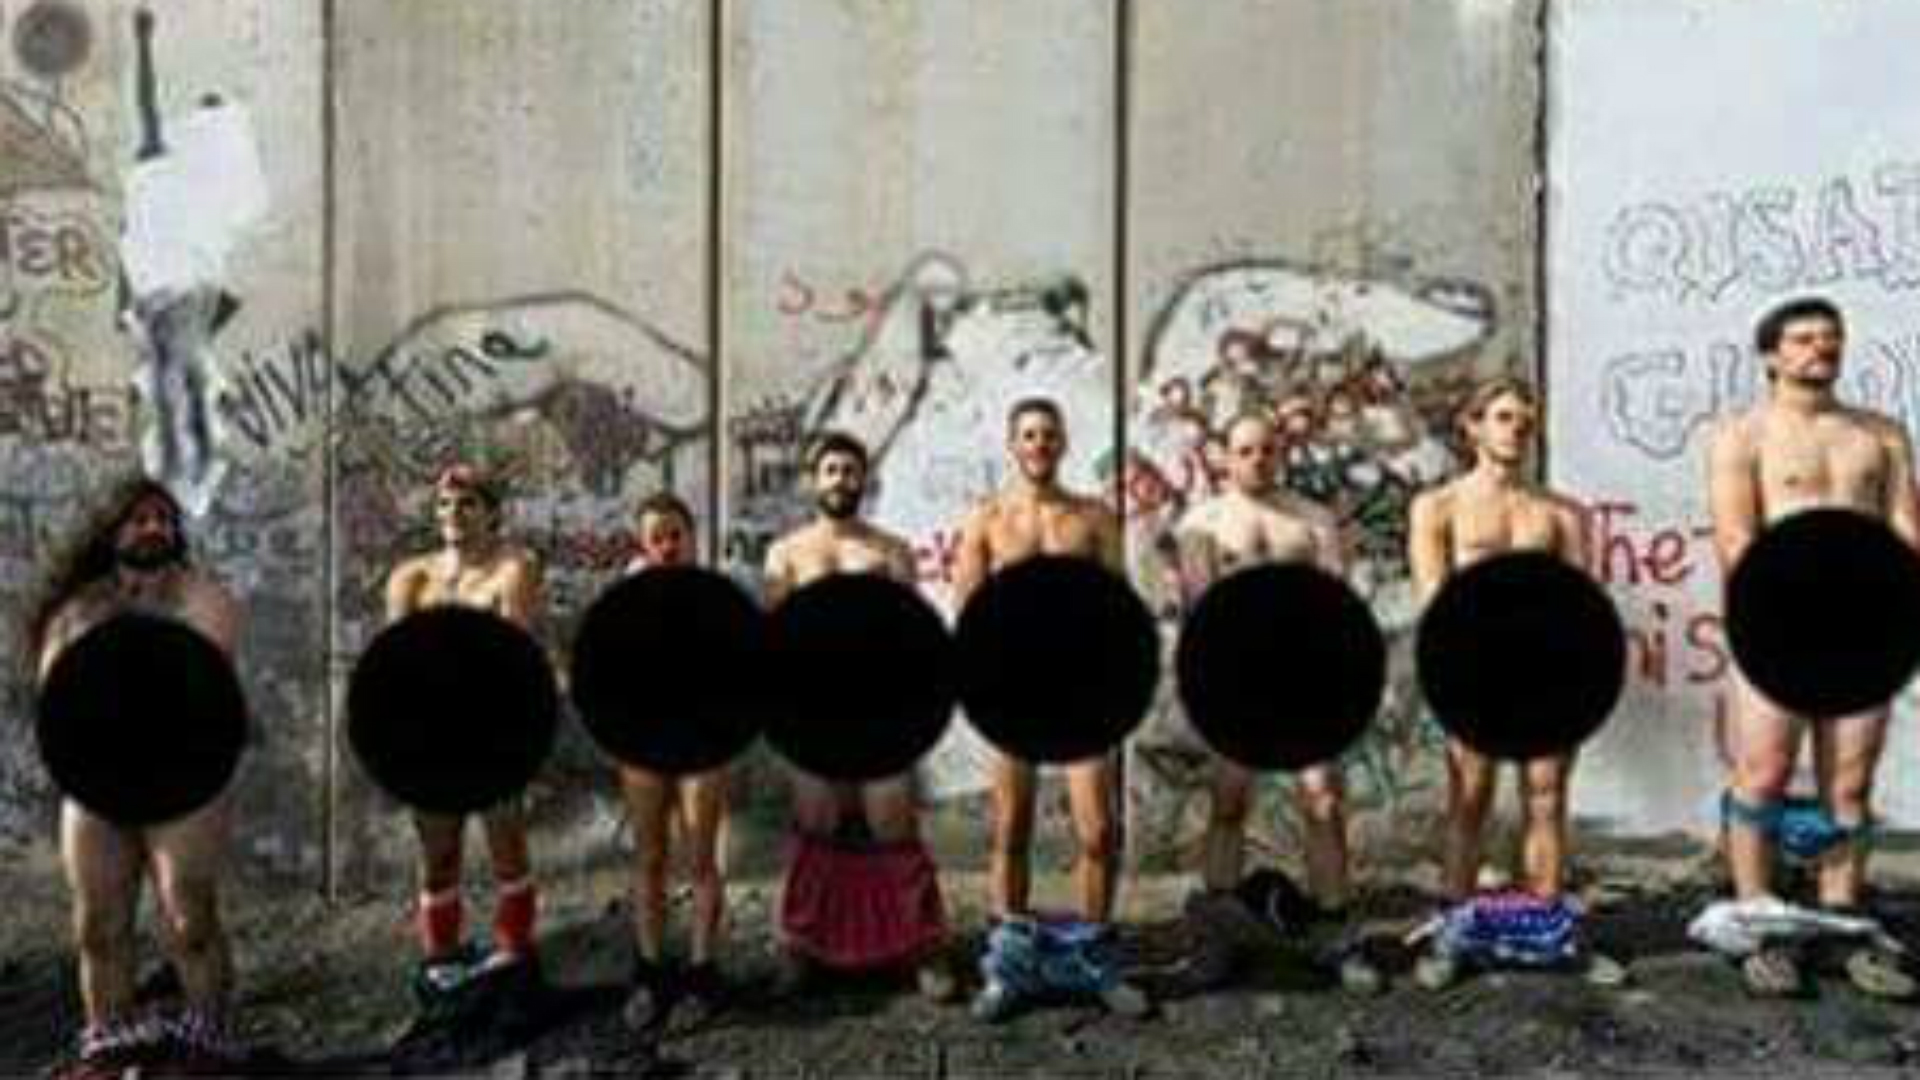 Palestinian nudes